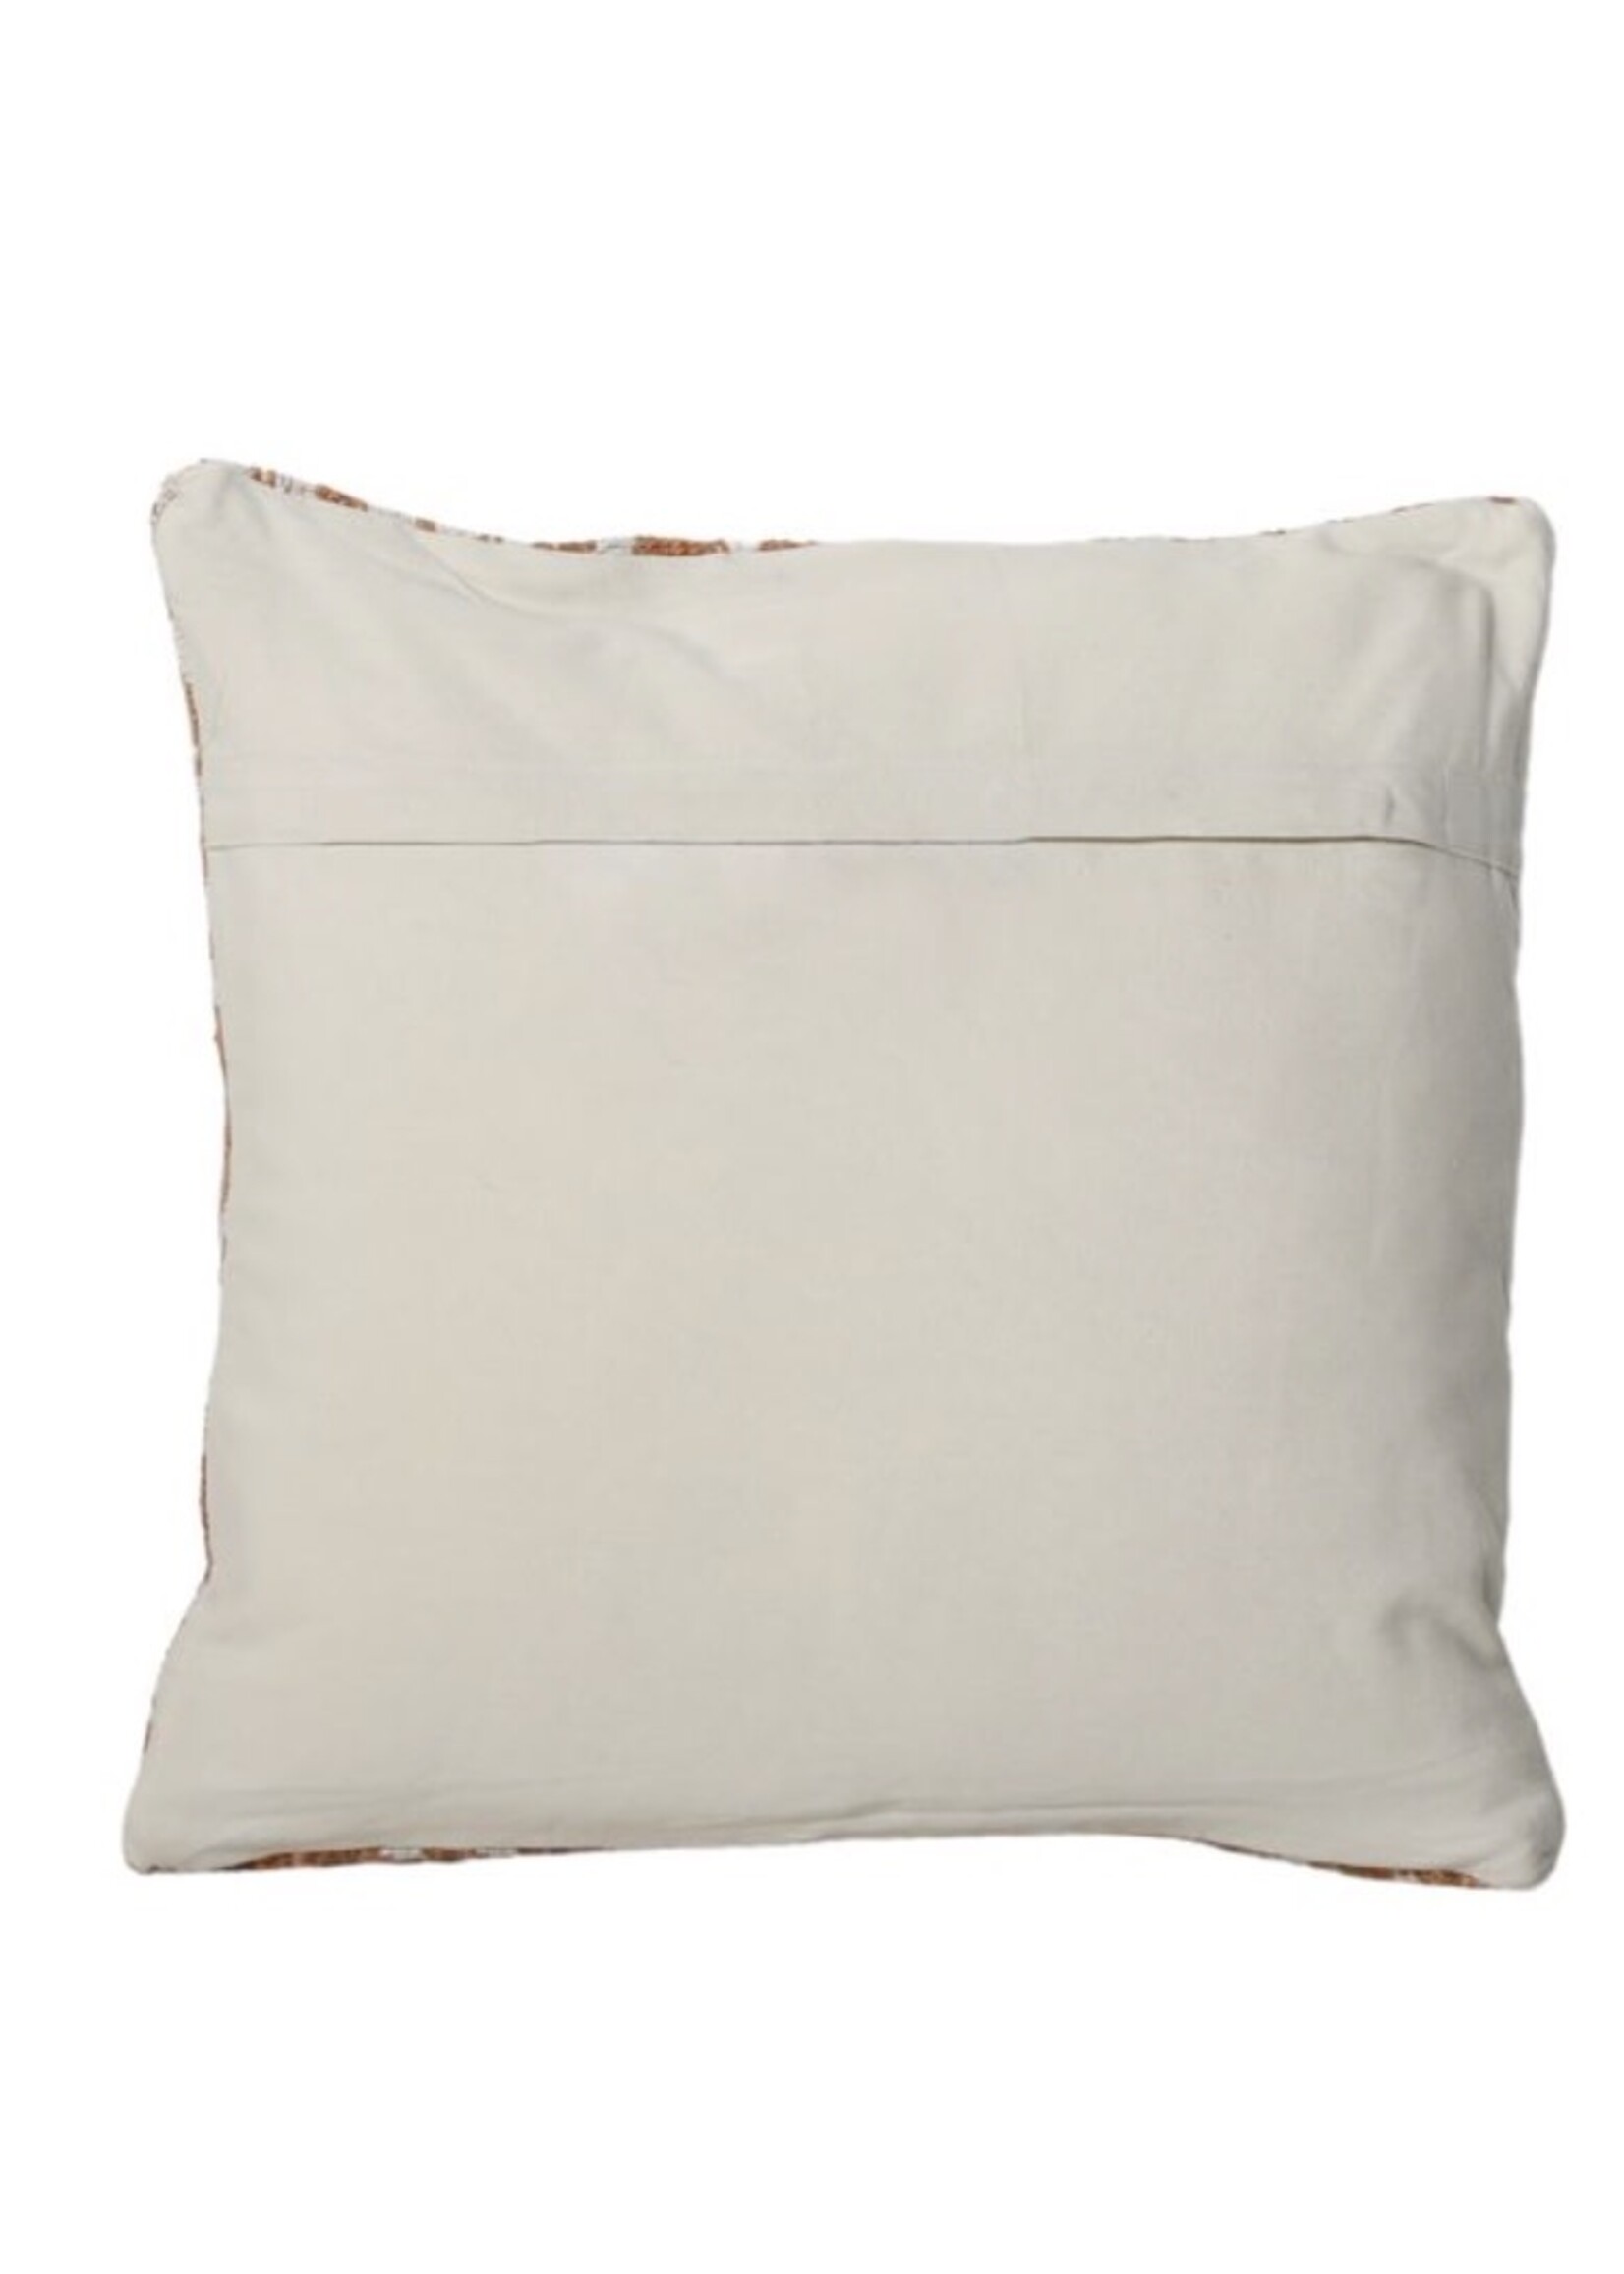 Leana Outdoor Pillow Width: 20 in Depth: 1 in Height: 20 in